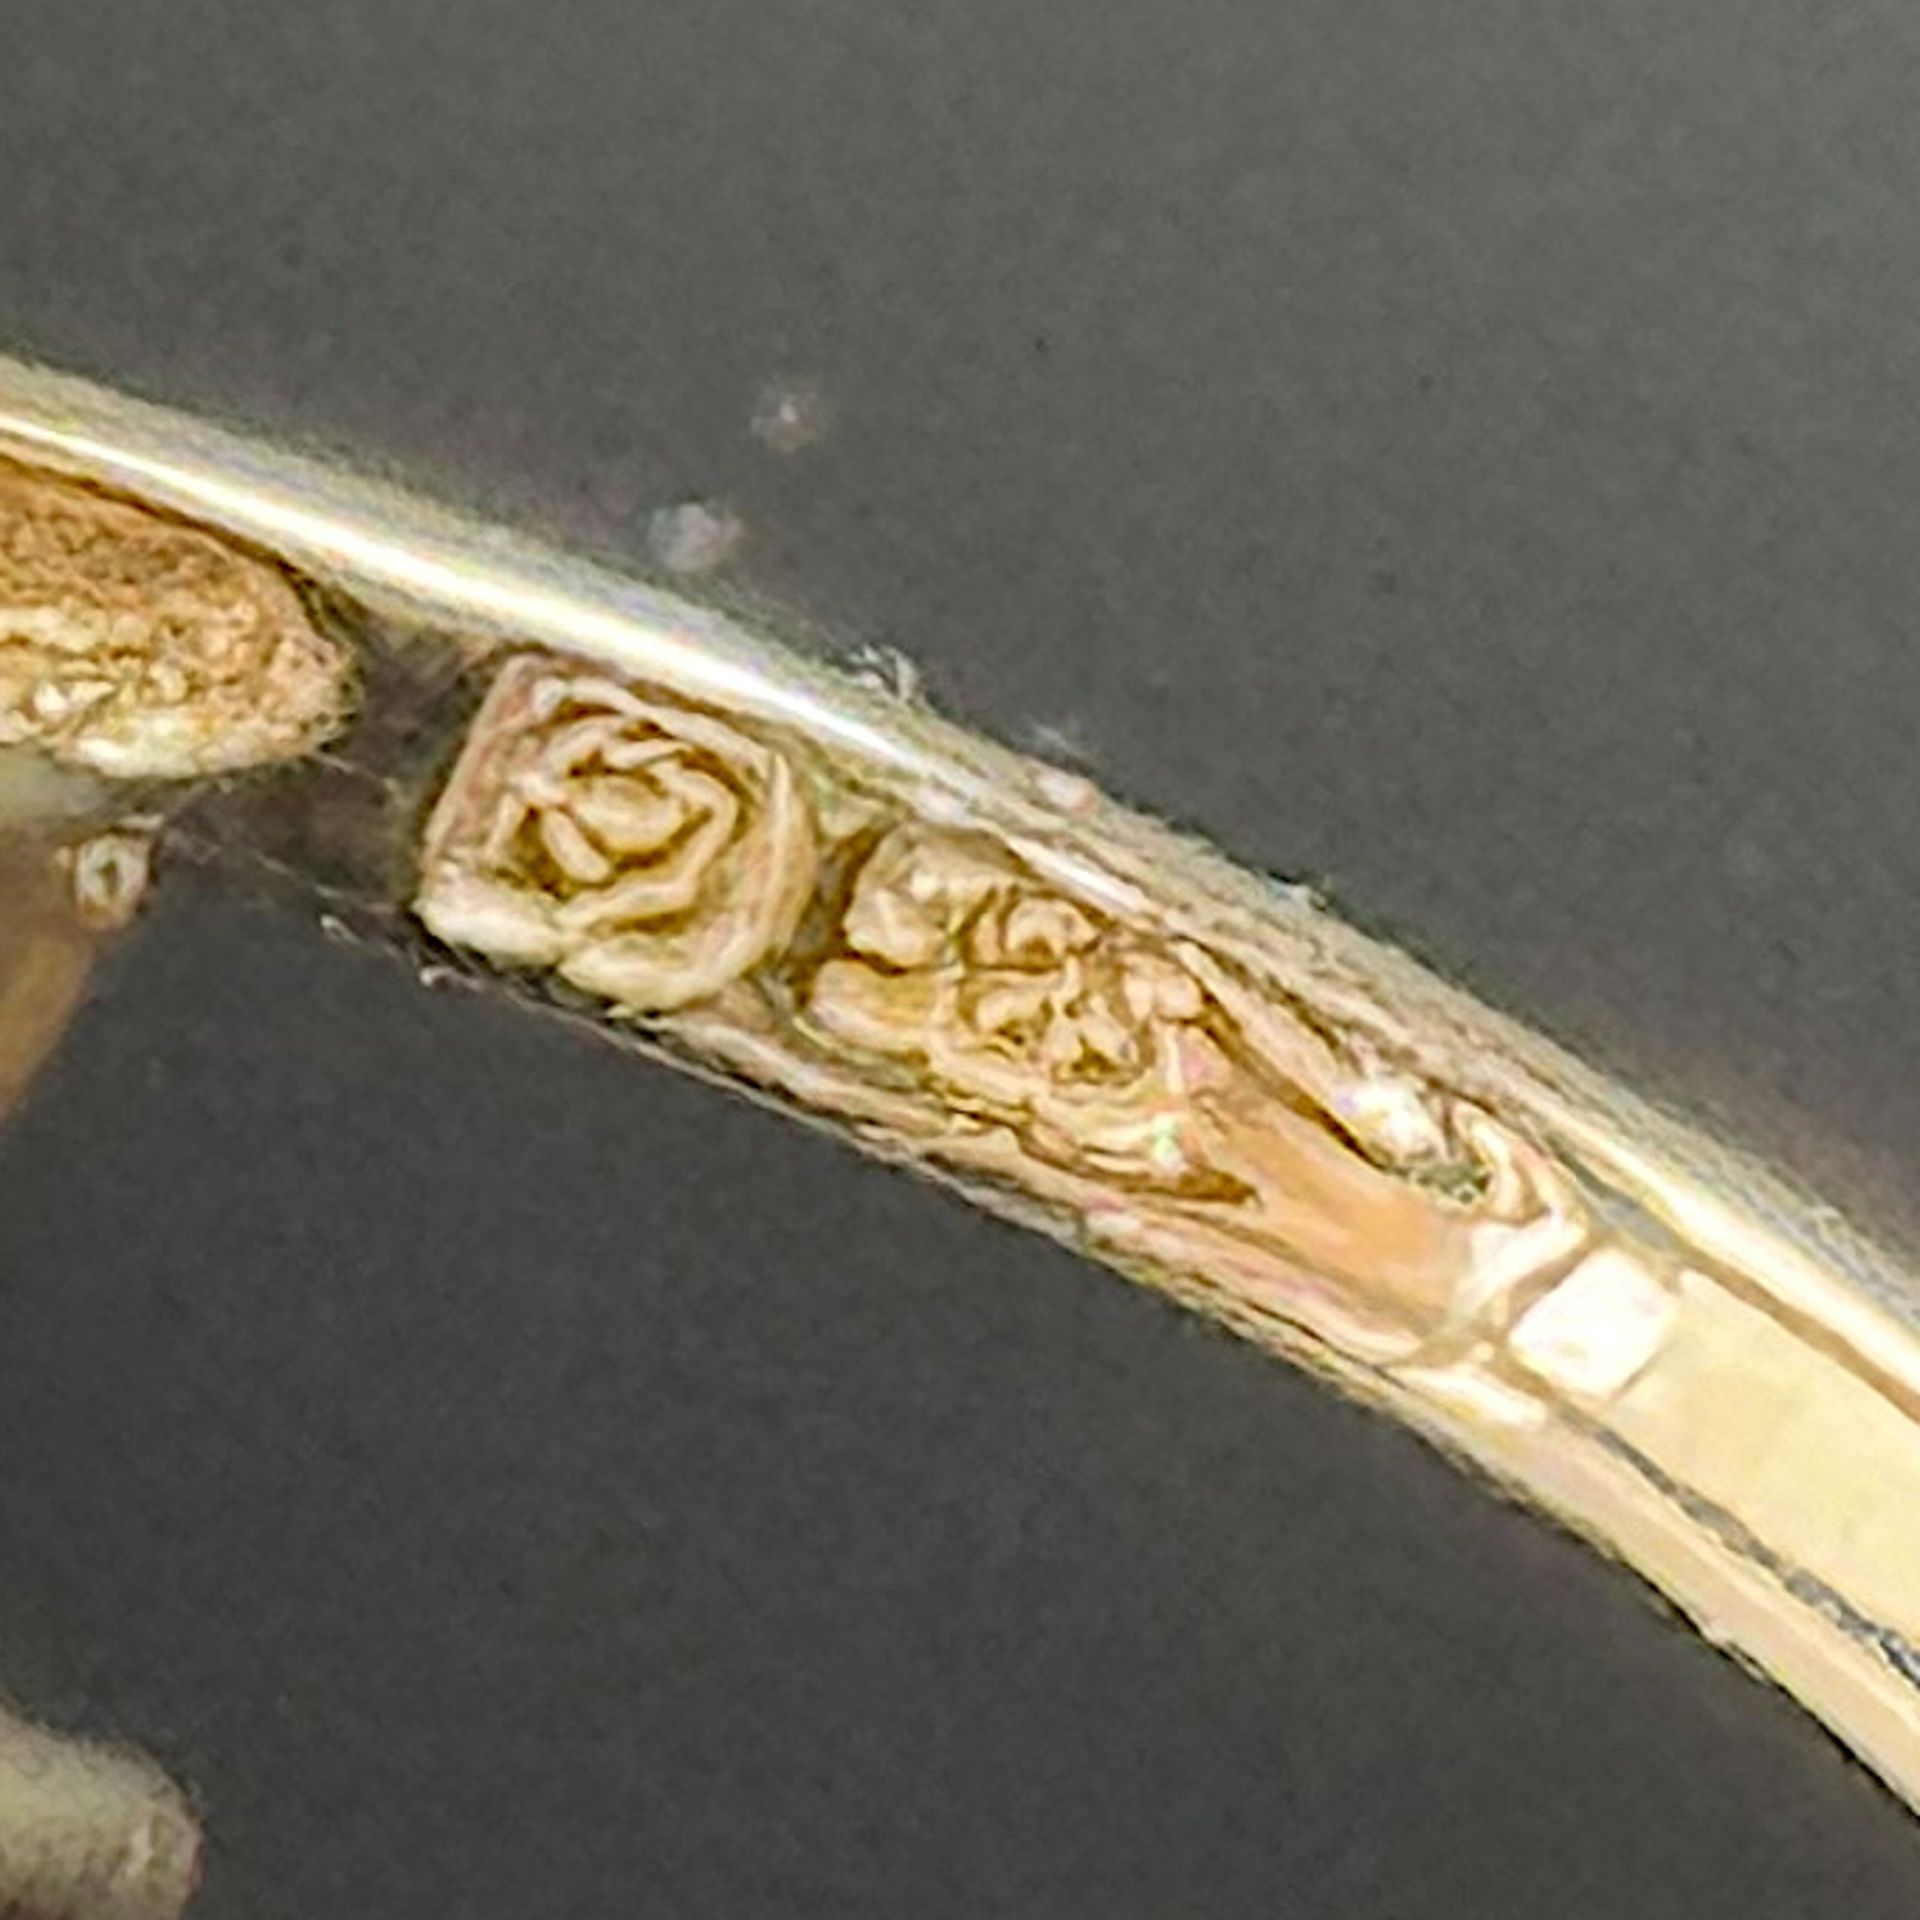 Smaragd Diamant Ring, 585/14K Weiß- und Gelbgold (punziert), 4,32g, fein ausgestaltet als Blattmoti - Bild 3 aus 3